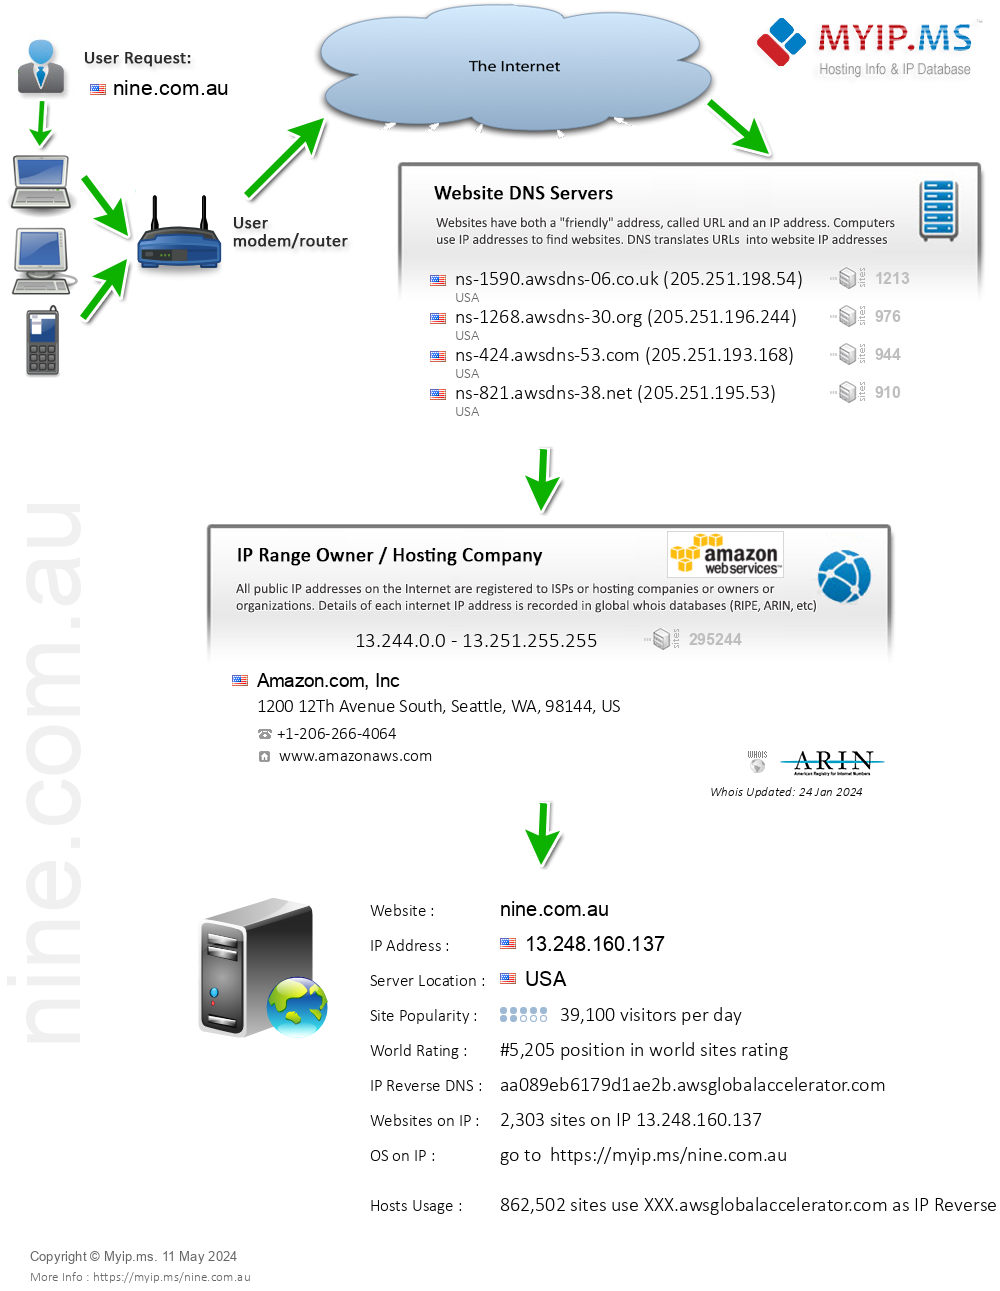 Nine.com.au - Website Hosting Visual IP Diagram